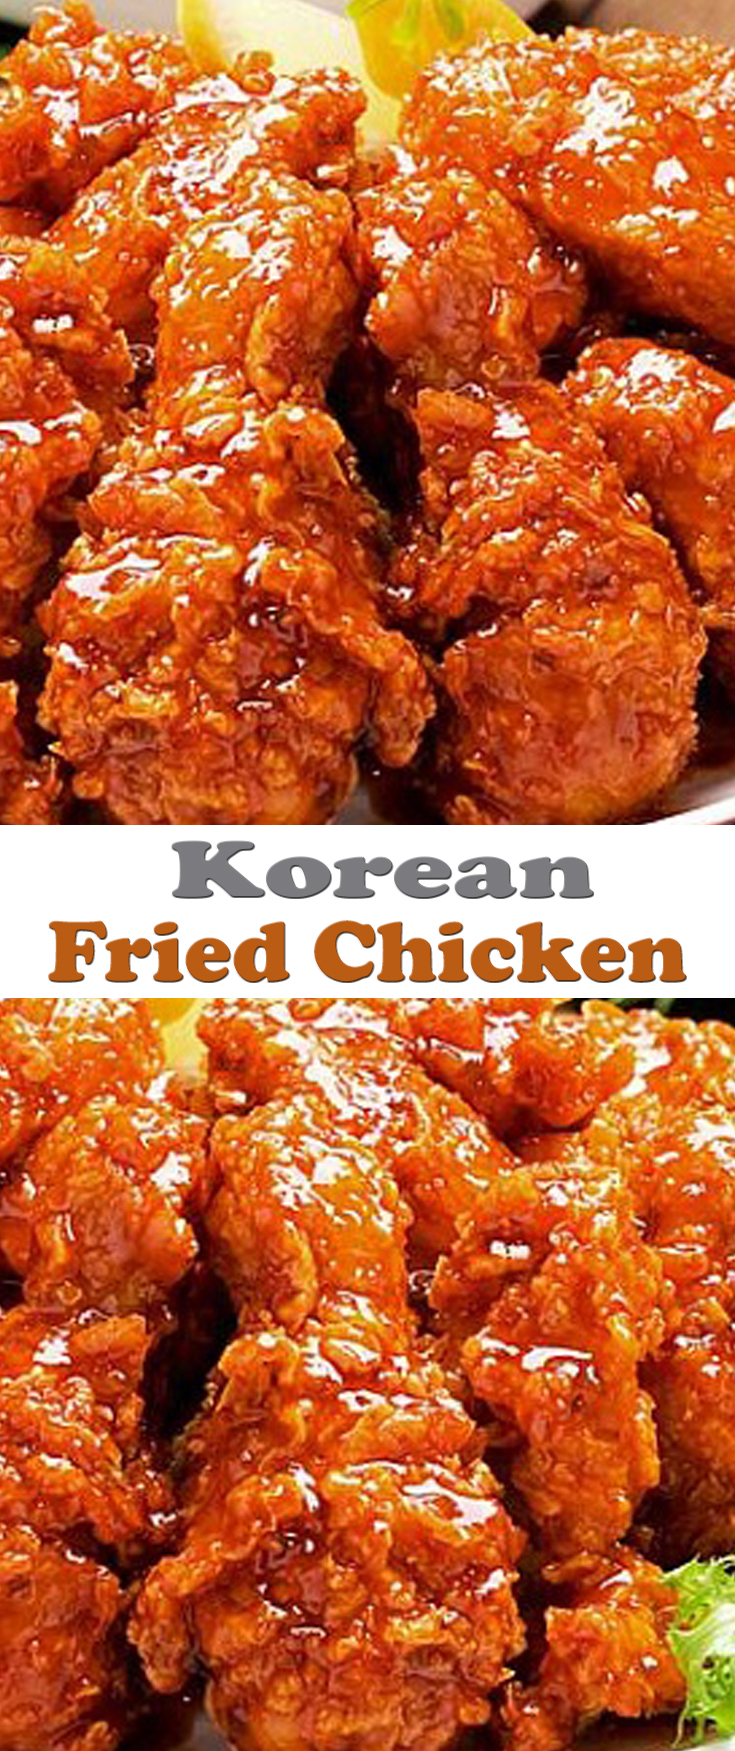 Korean Fried Chicken Recipe